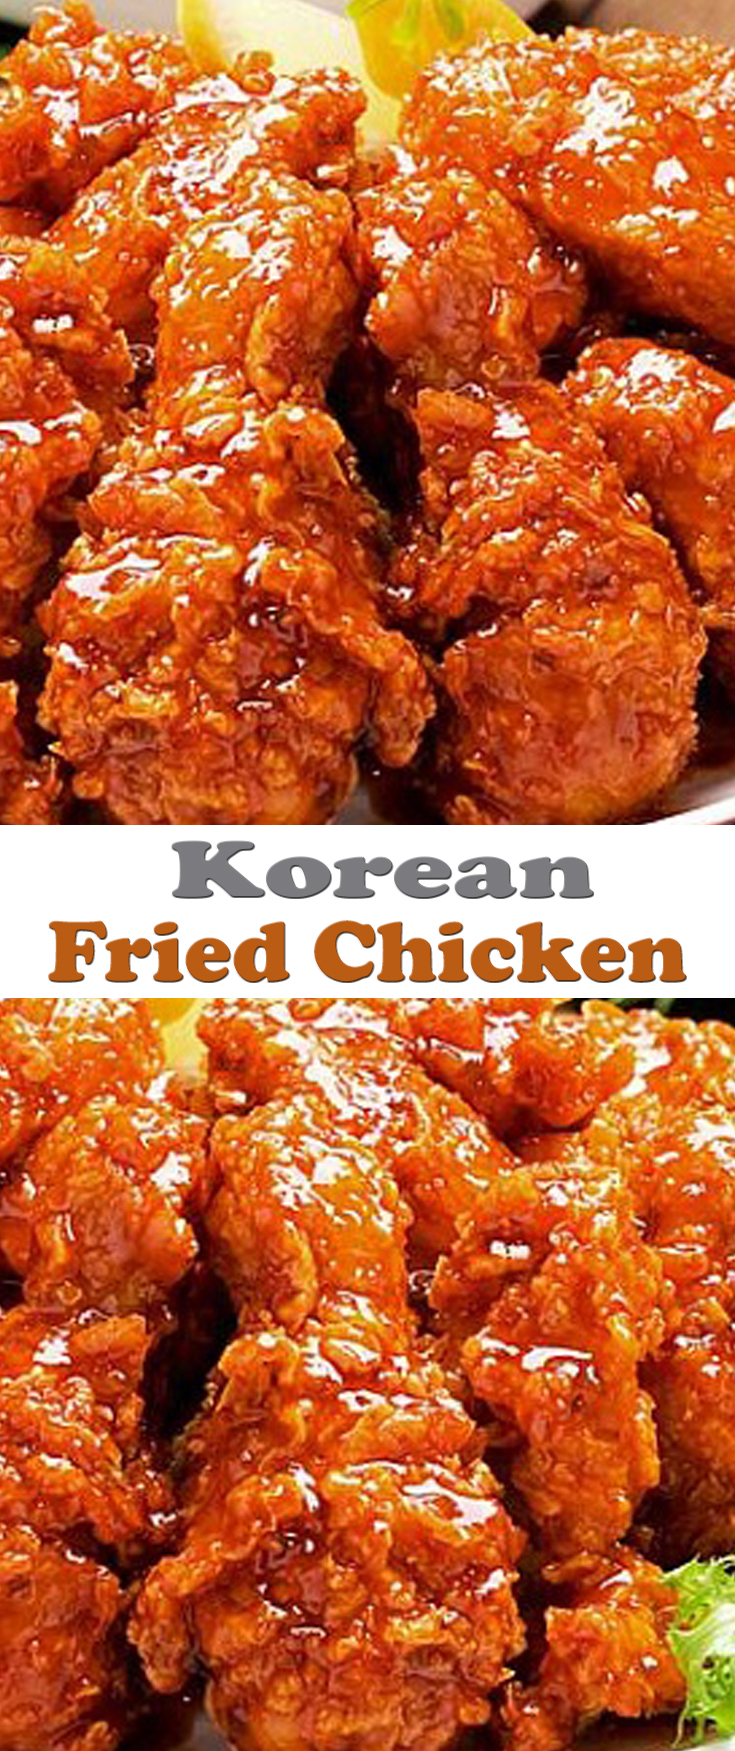 Korean Fried Chicken Recipe